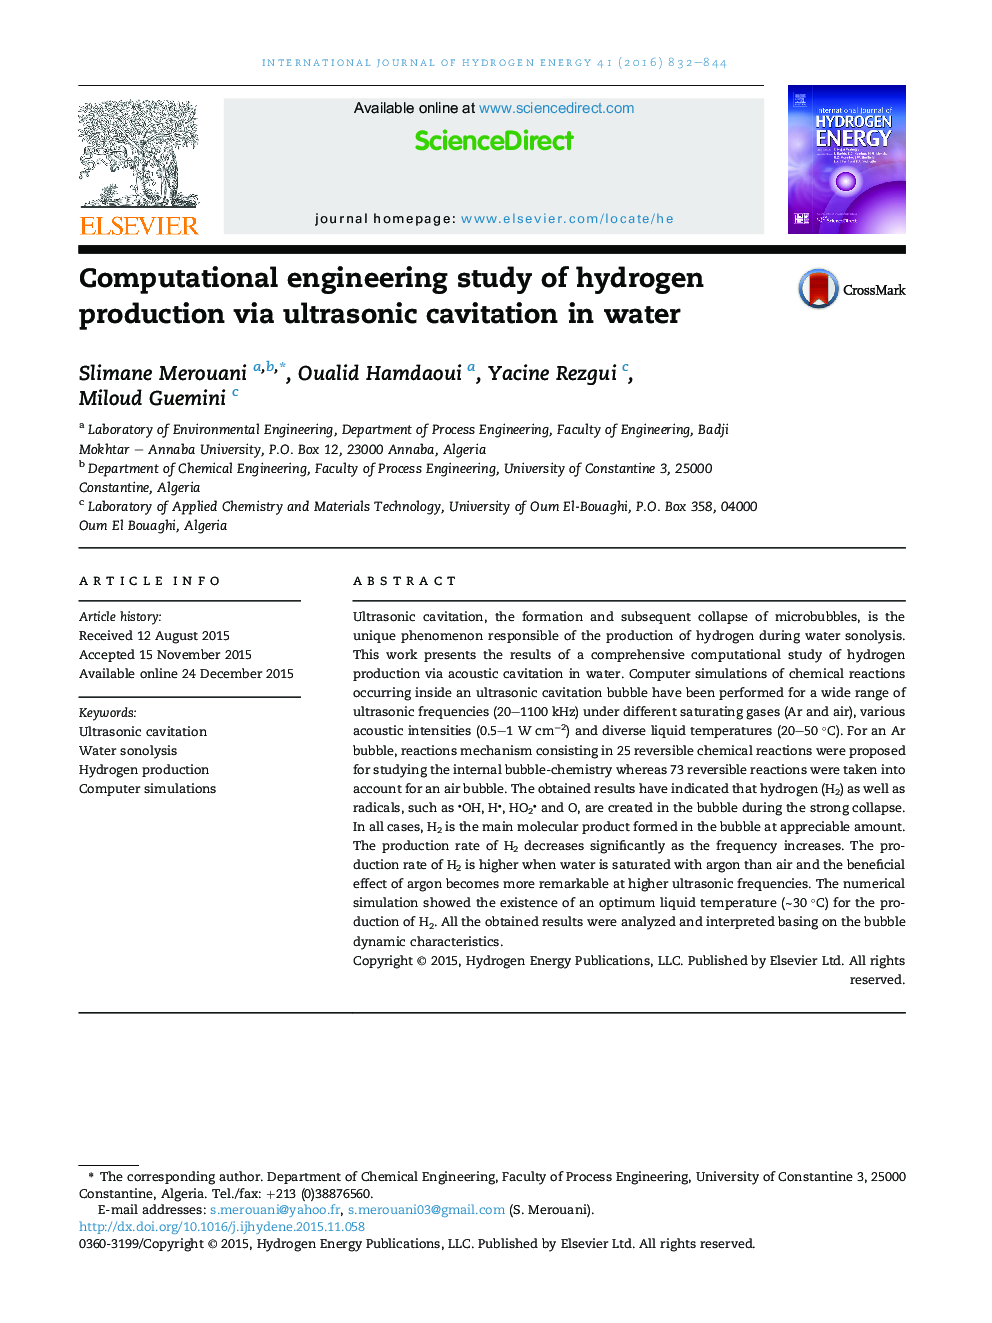 مطالعه مهندسی محاسباتی تولید هیدروژن از طریق کاویتاسیون اولتراسونیک در آب 